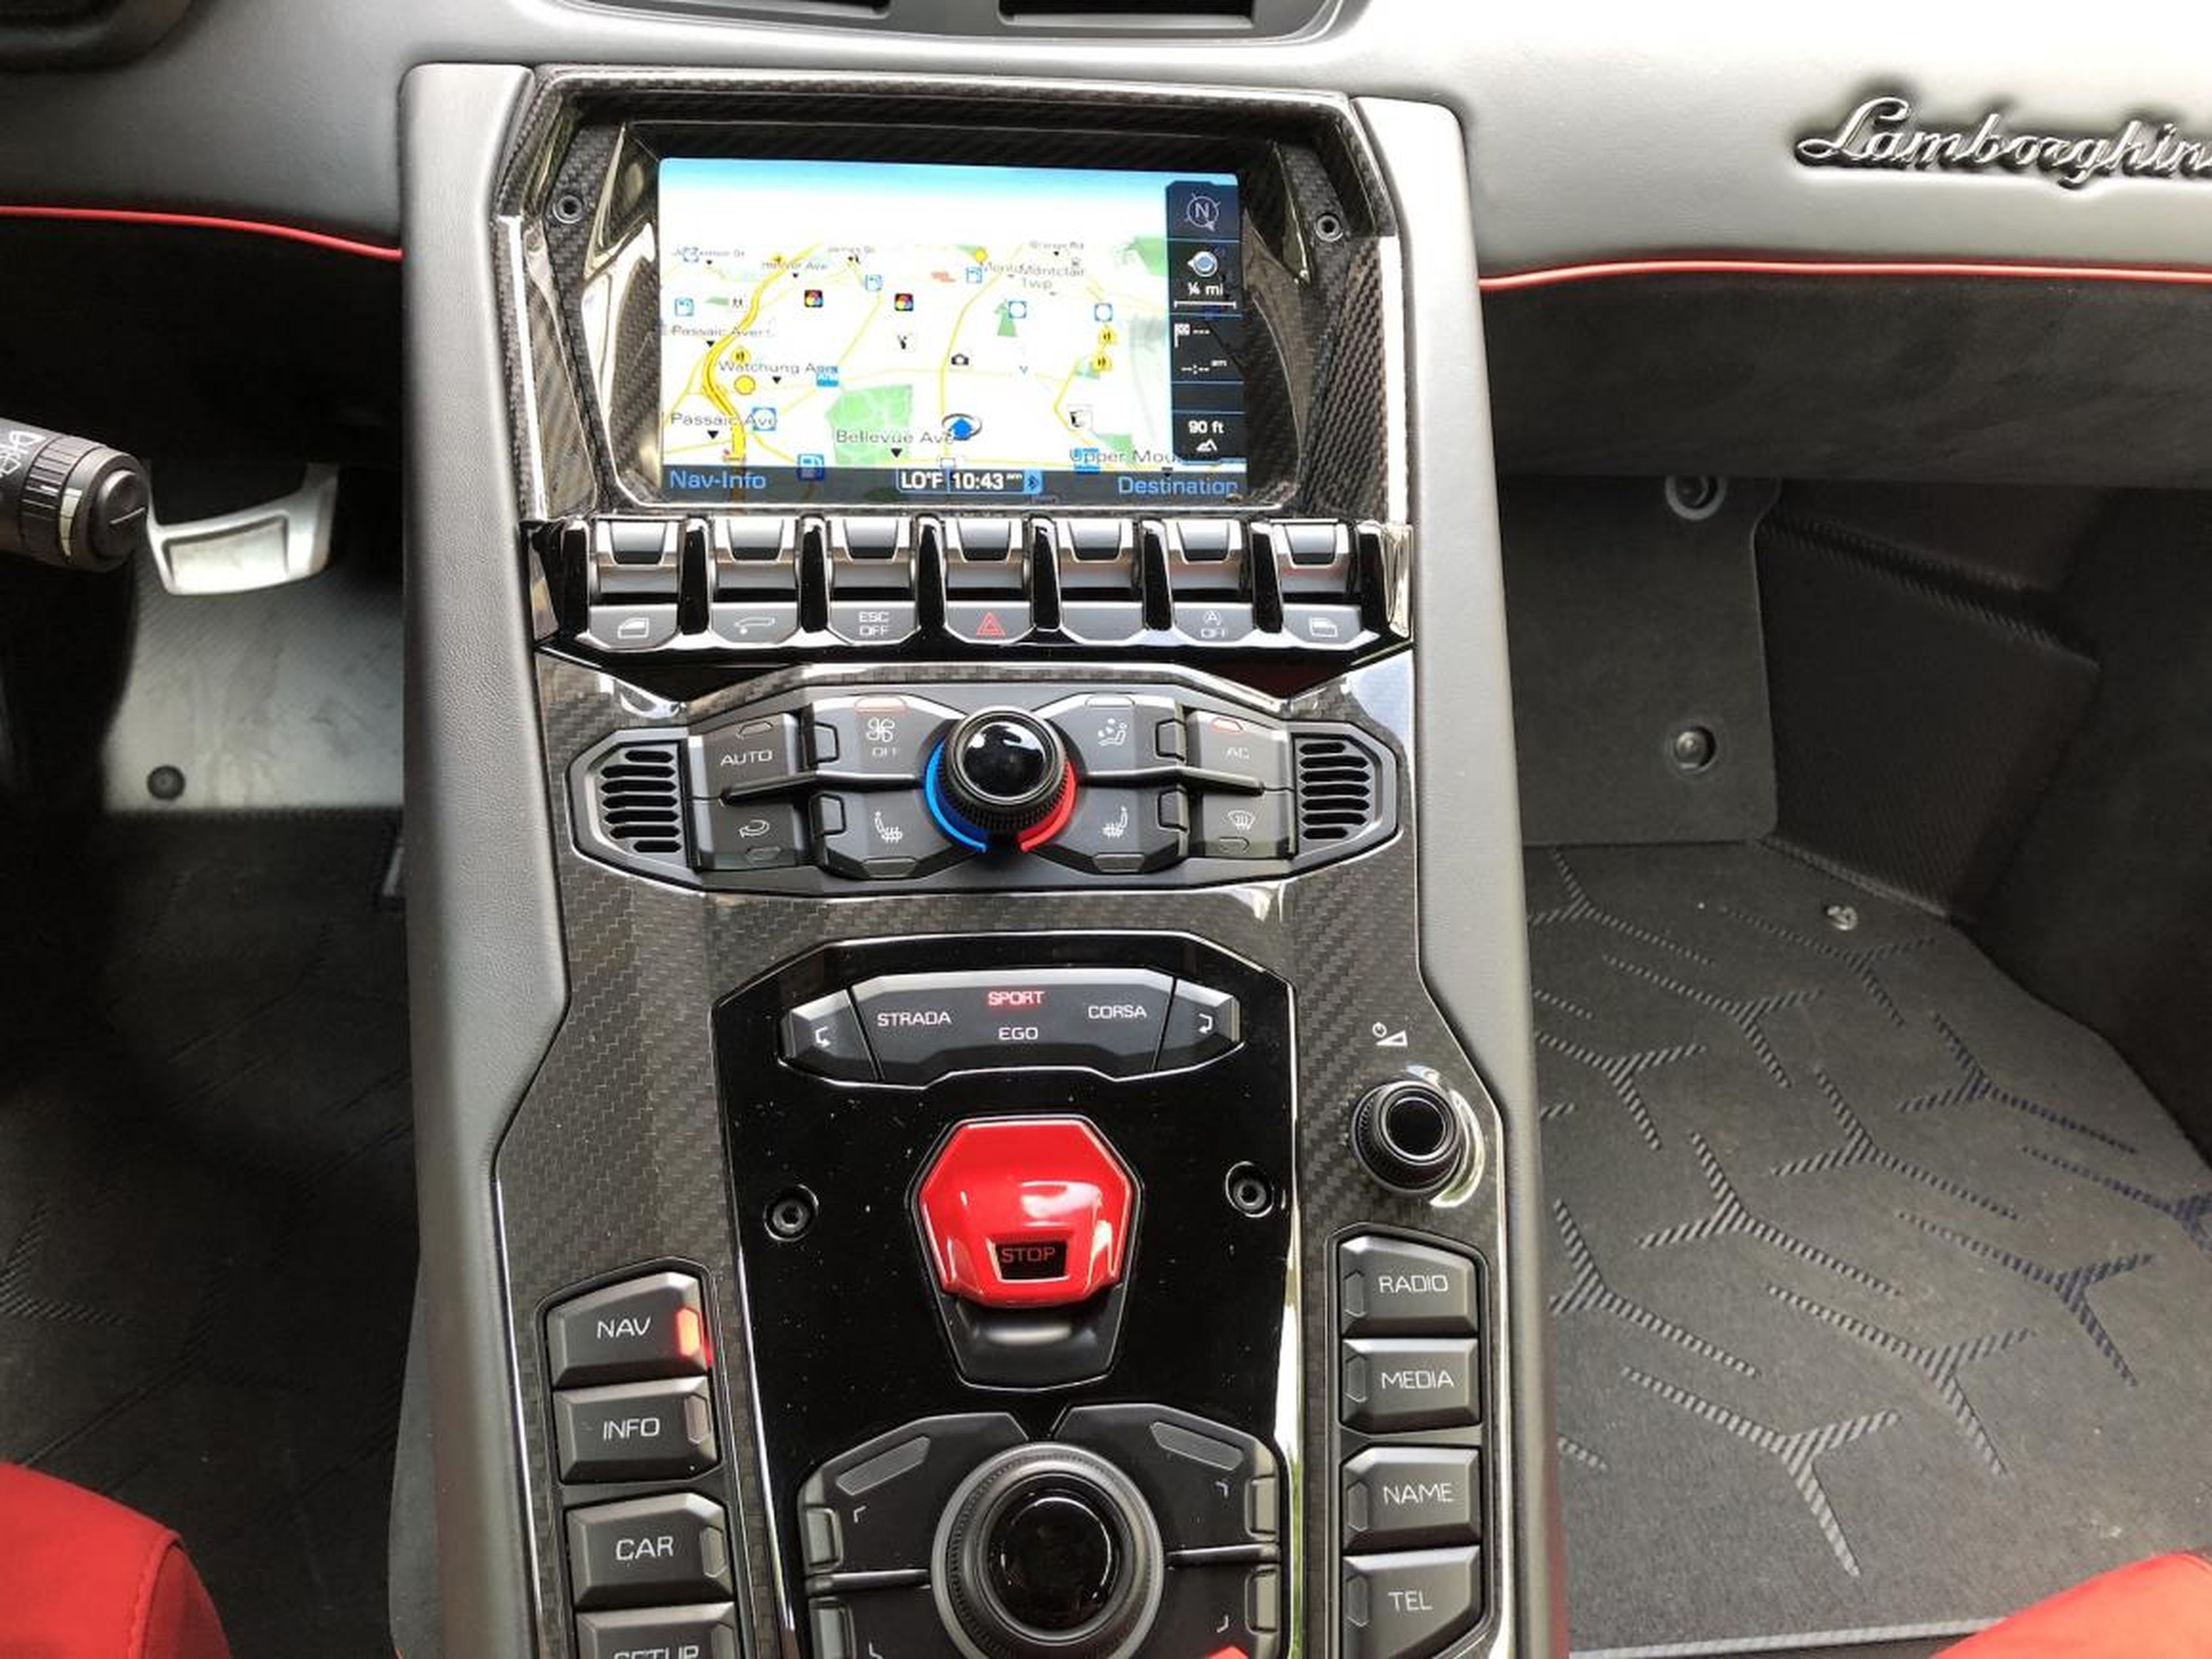 La pantalla de información y entretenimiento, derivada de Audi, se encuentra en la parte superior de la consola central. Es cómoda de usar, pero es un poco incómodo navegar usando la interfaz que viene.